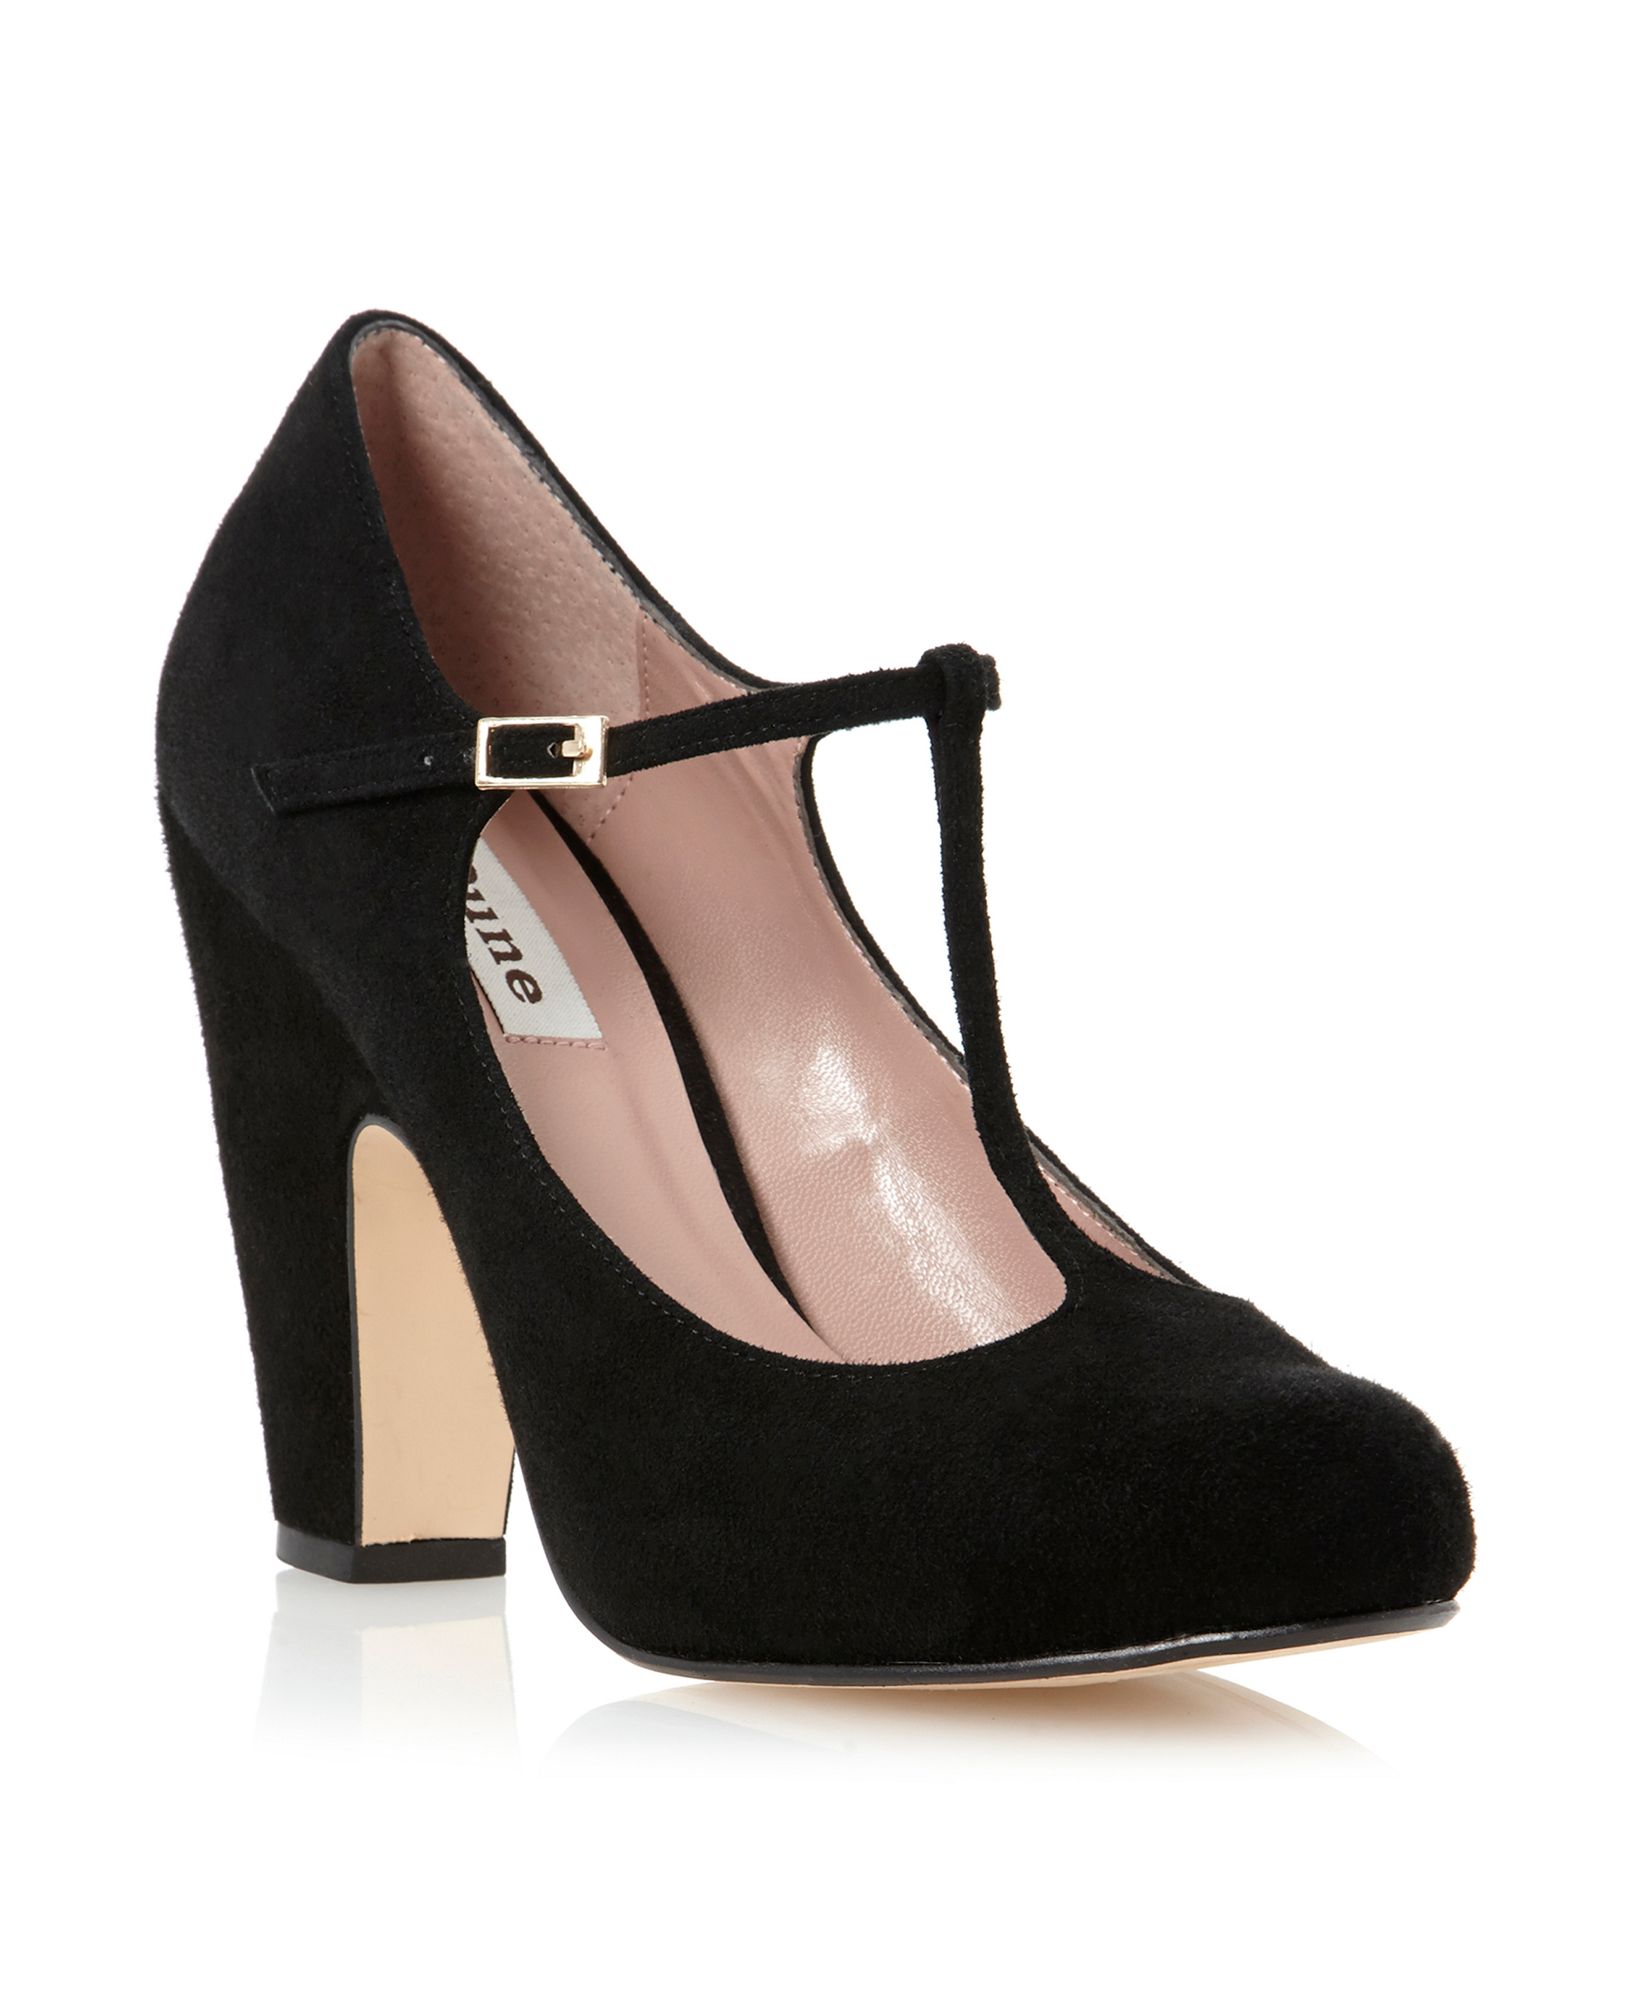 Dune Antina Tbar Block Heel Court Shoes in Black (Black Suede) | Lyst